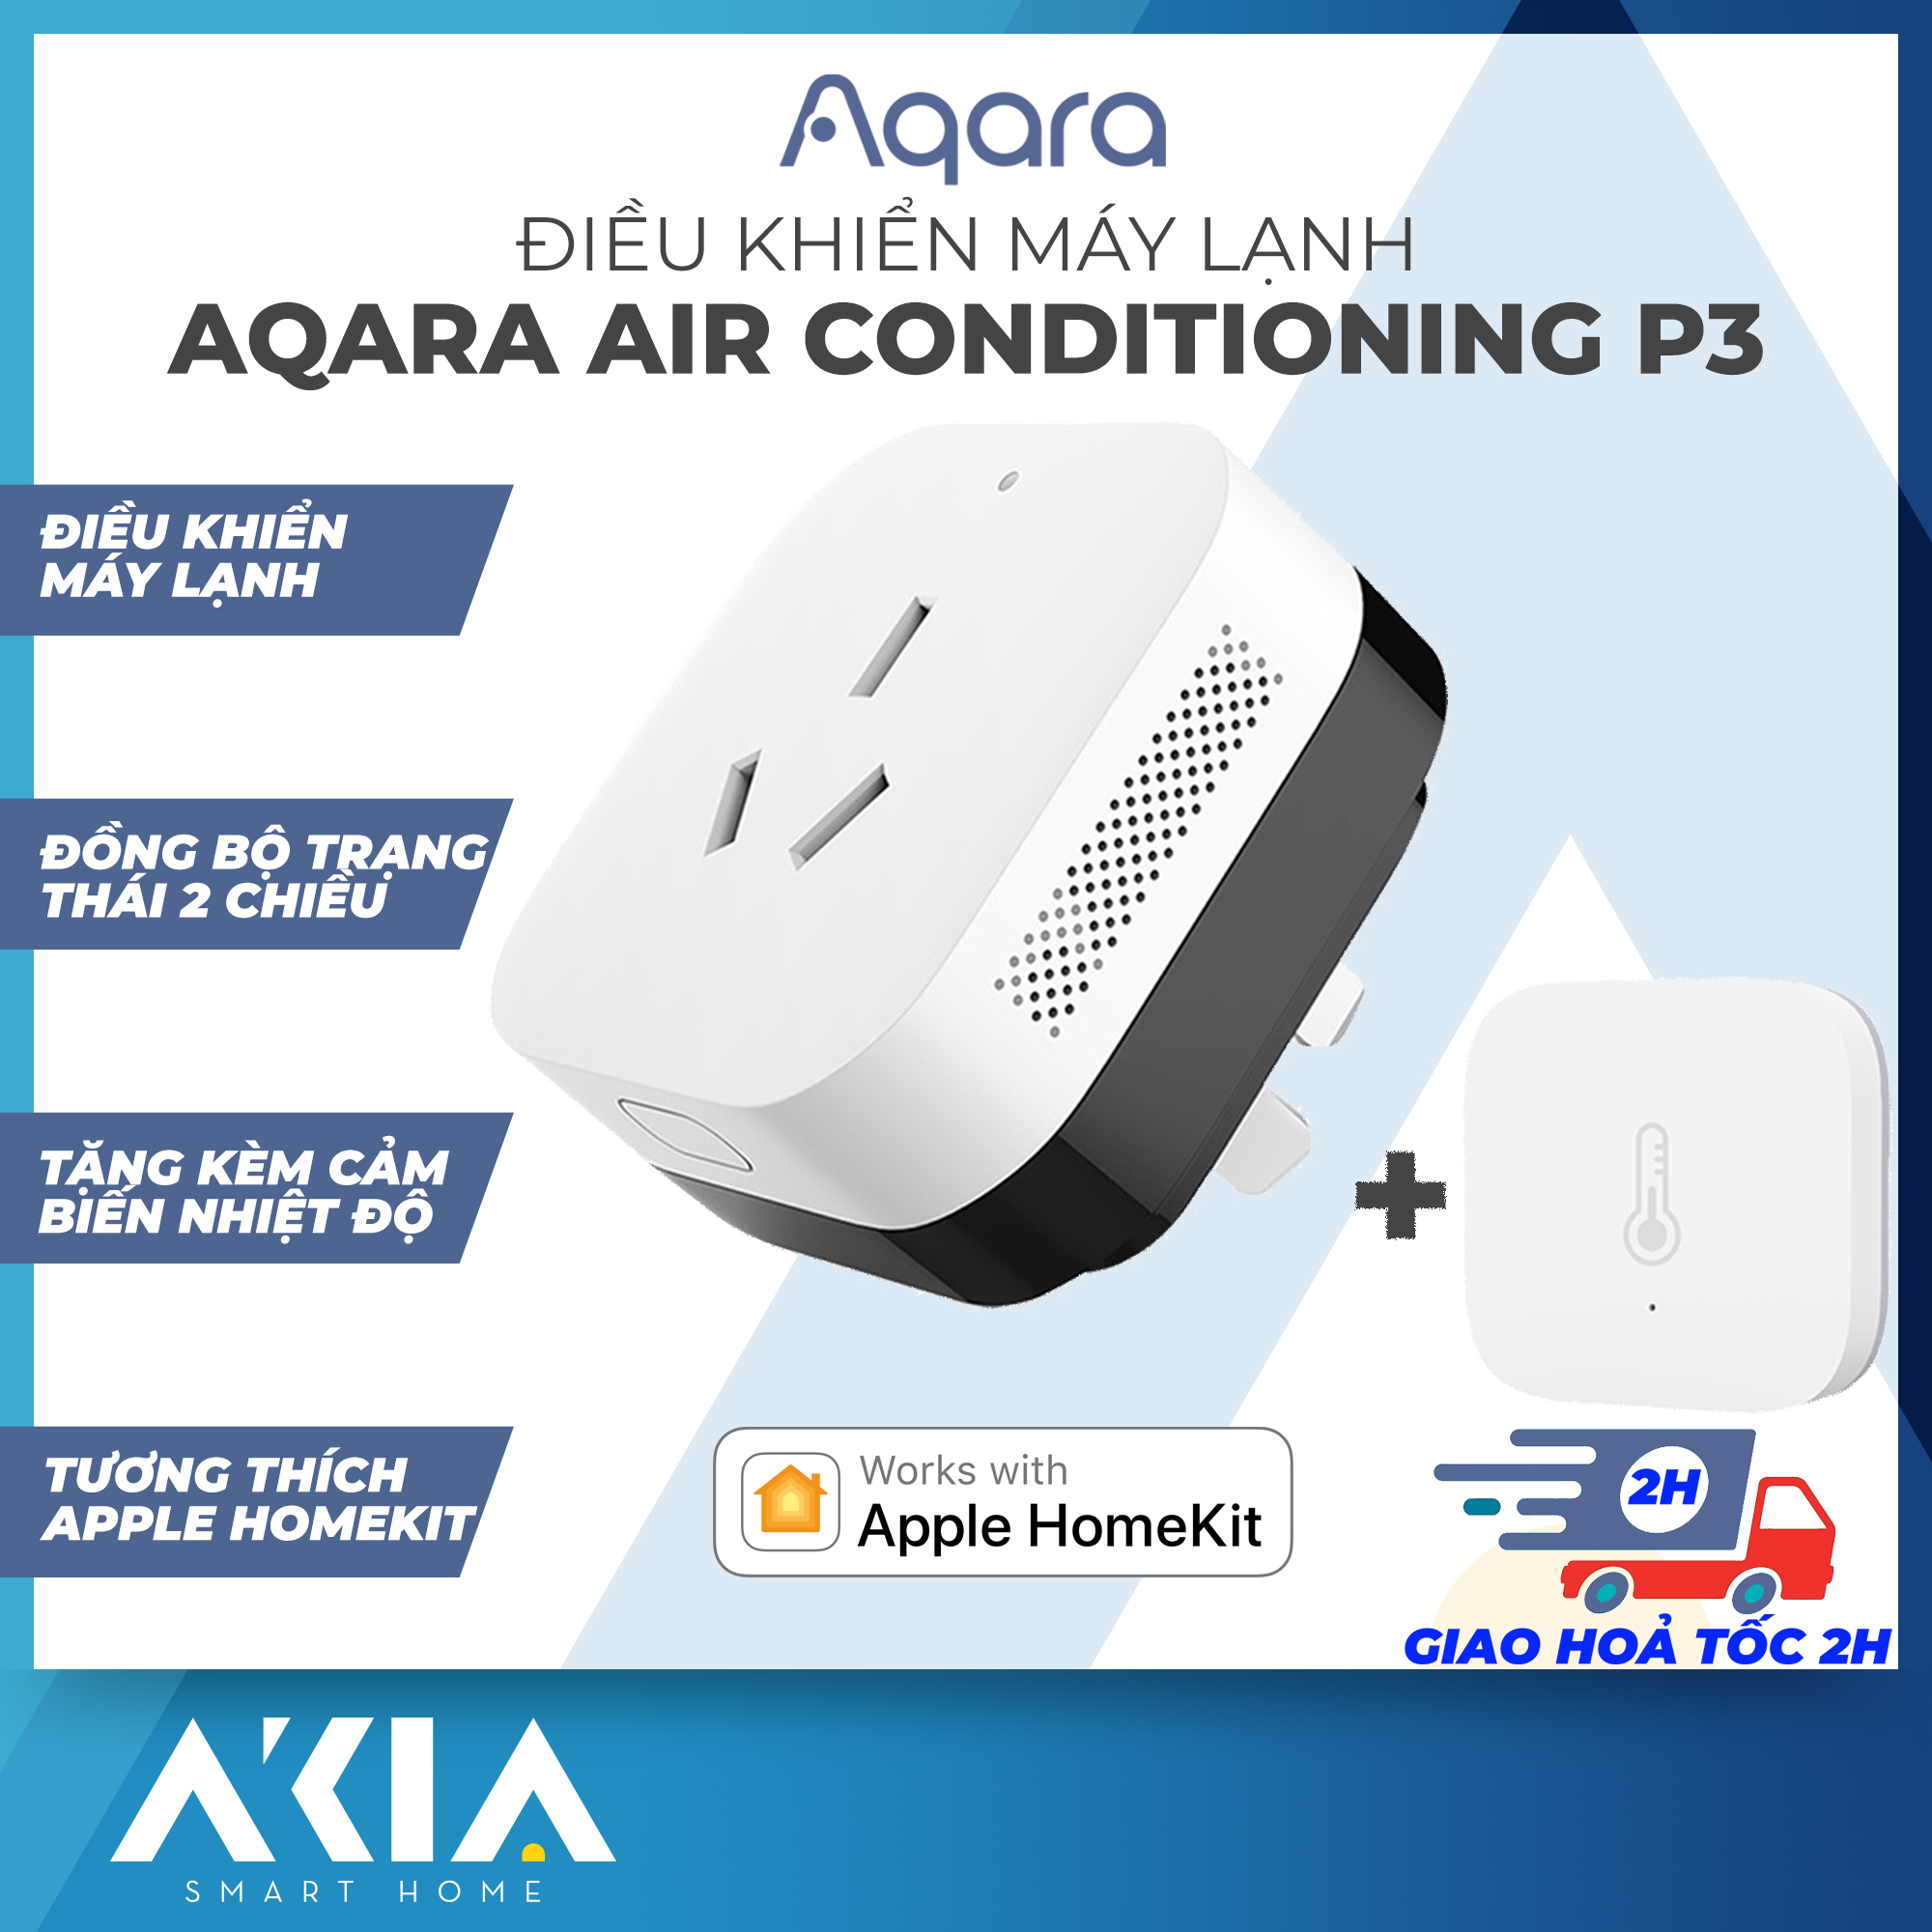 Aqara P3 - Ổ cắm điều khiển điều hòa thông minh, tích hợp Aqara Hub